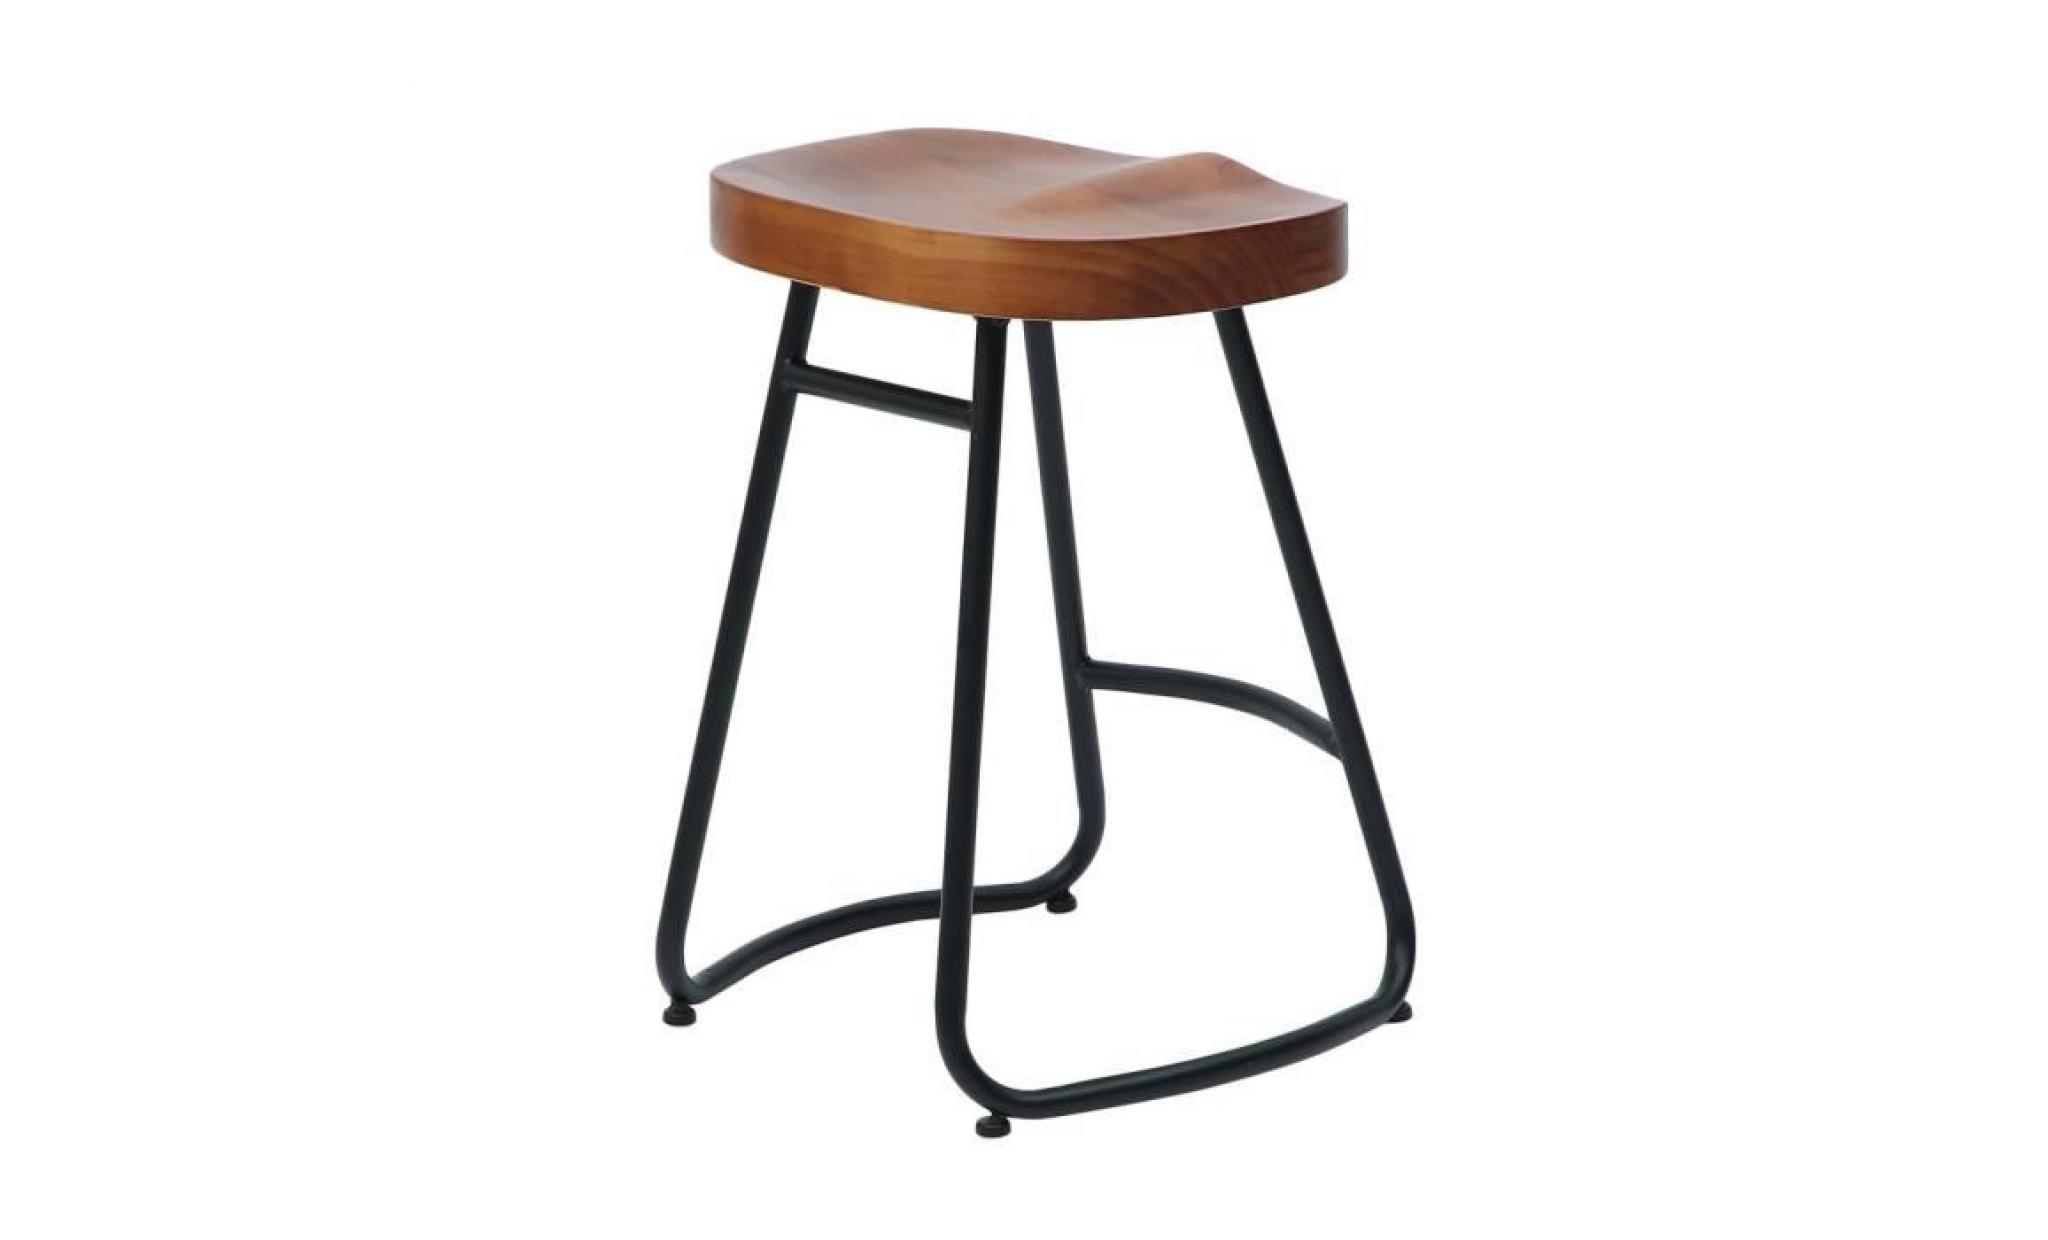 1pc 55cm chaise tabouret en bois chaise de bar pub classique design vintage rustique industriel pas cher